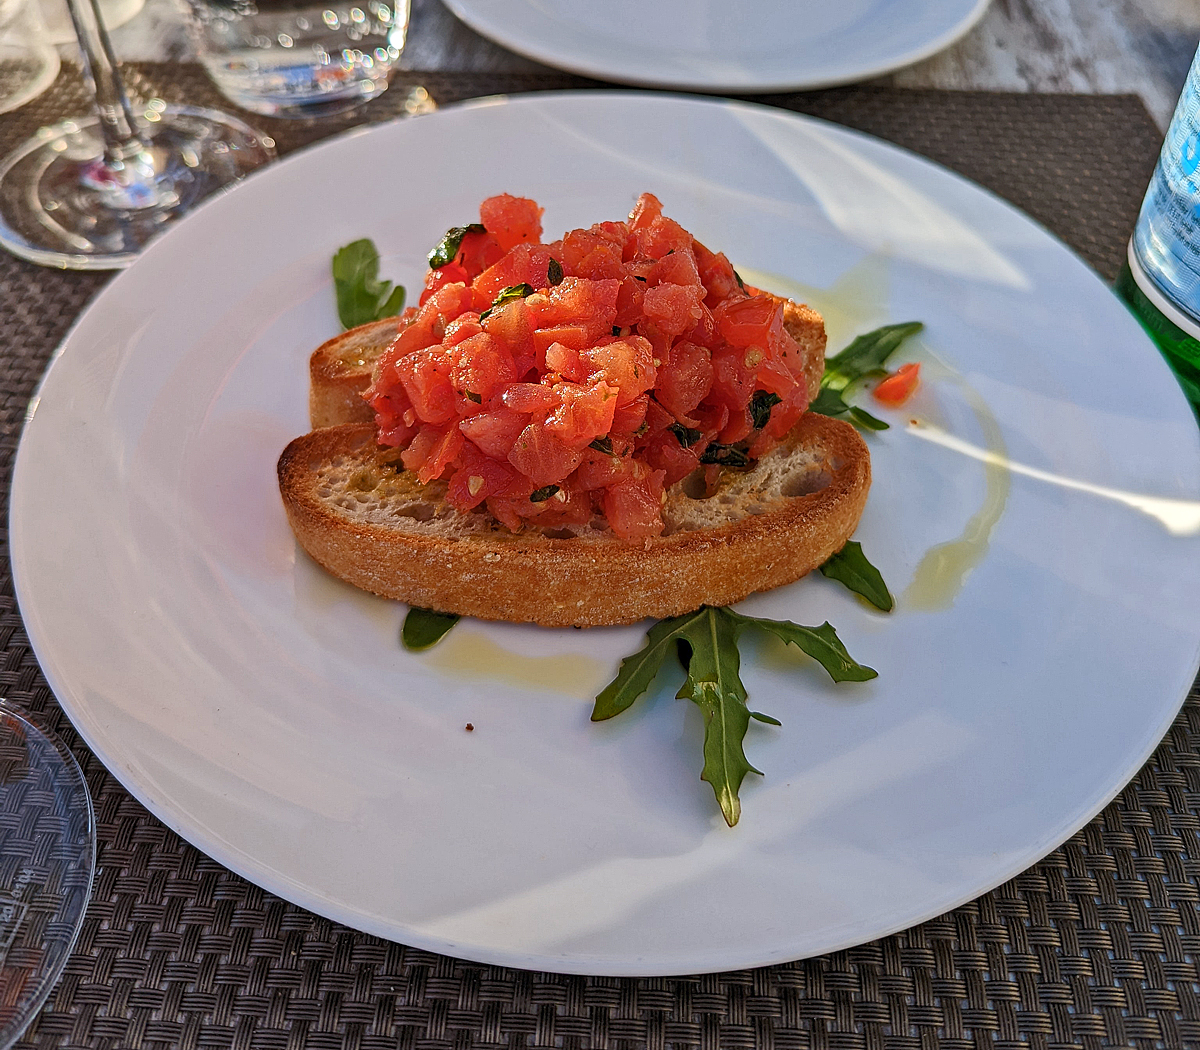 Ein Hauch von Sizilien an der Ostsee, hier am 15.05.2022 in Warnemünde.
Als kleine Vorspeise:
BRUSCHETTA ORIGINALE 
Geröstetes Weißbrot mit Tomaten, Knoblauch und Basilikum
